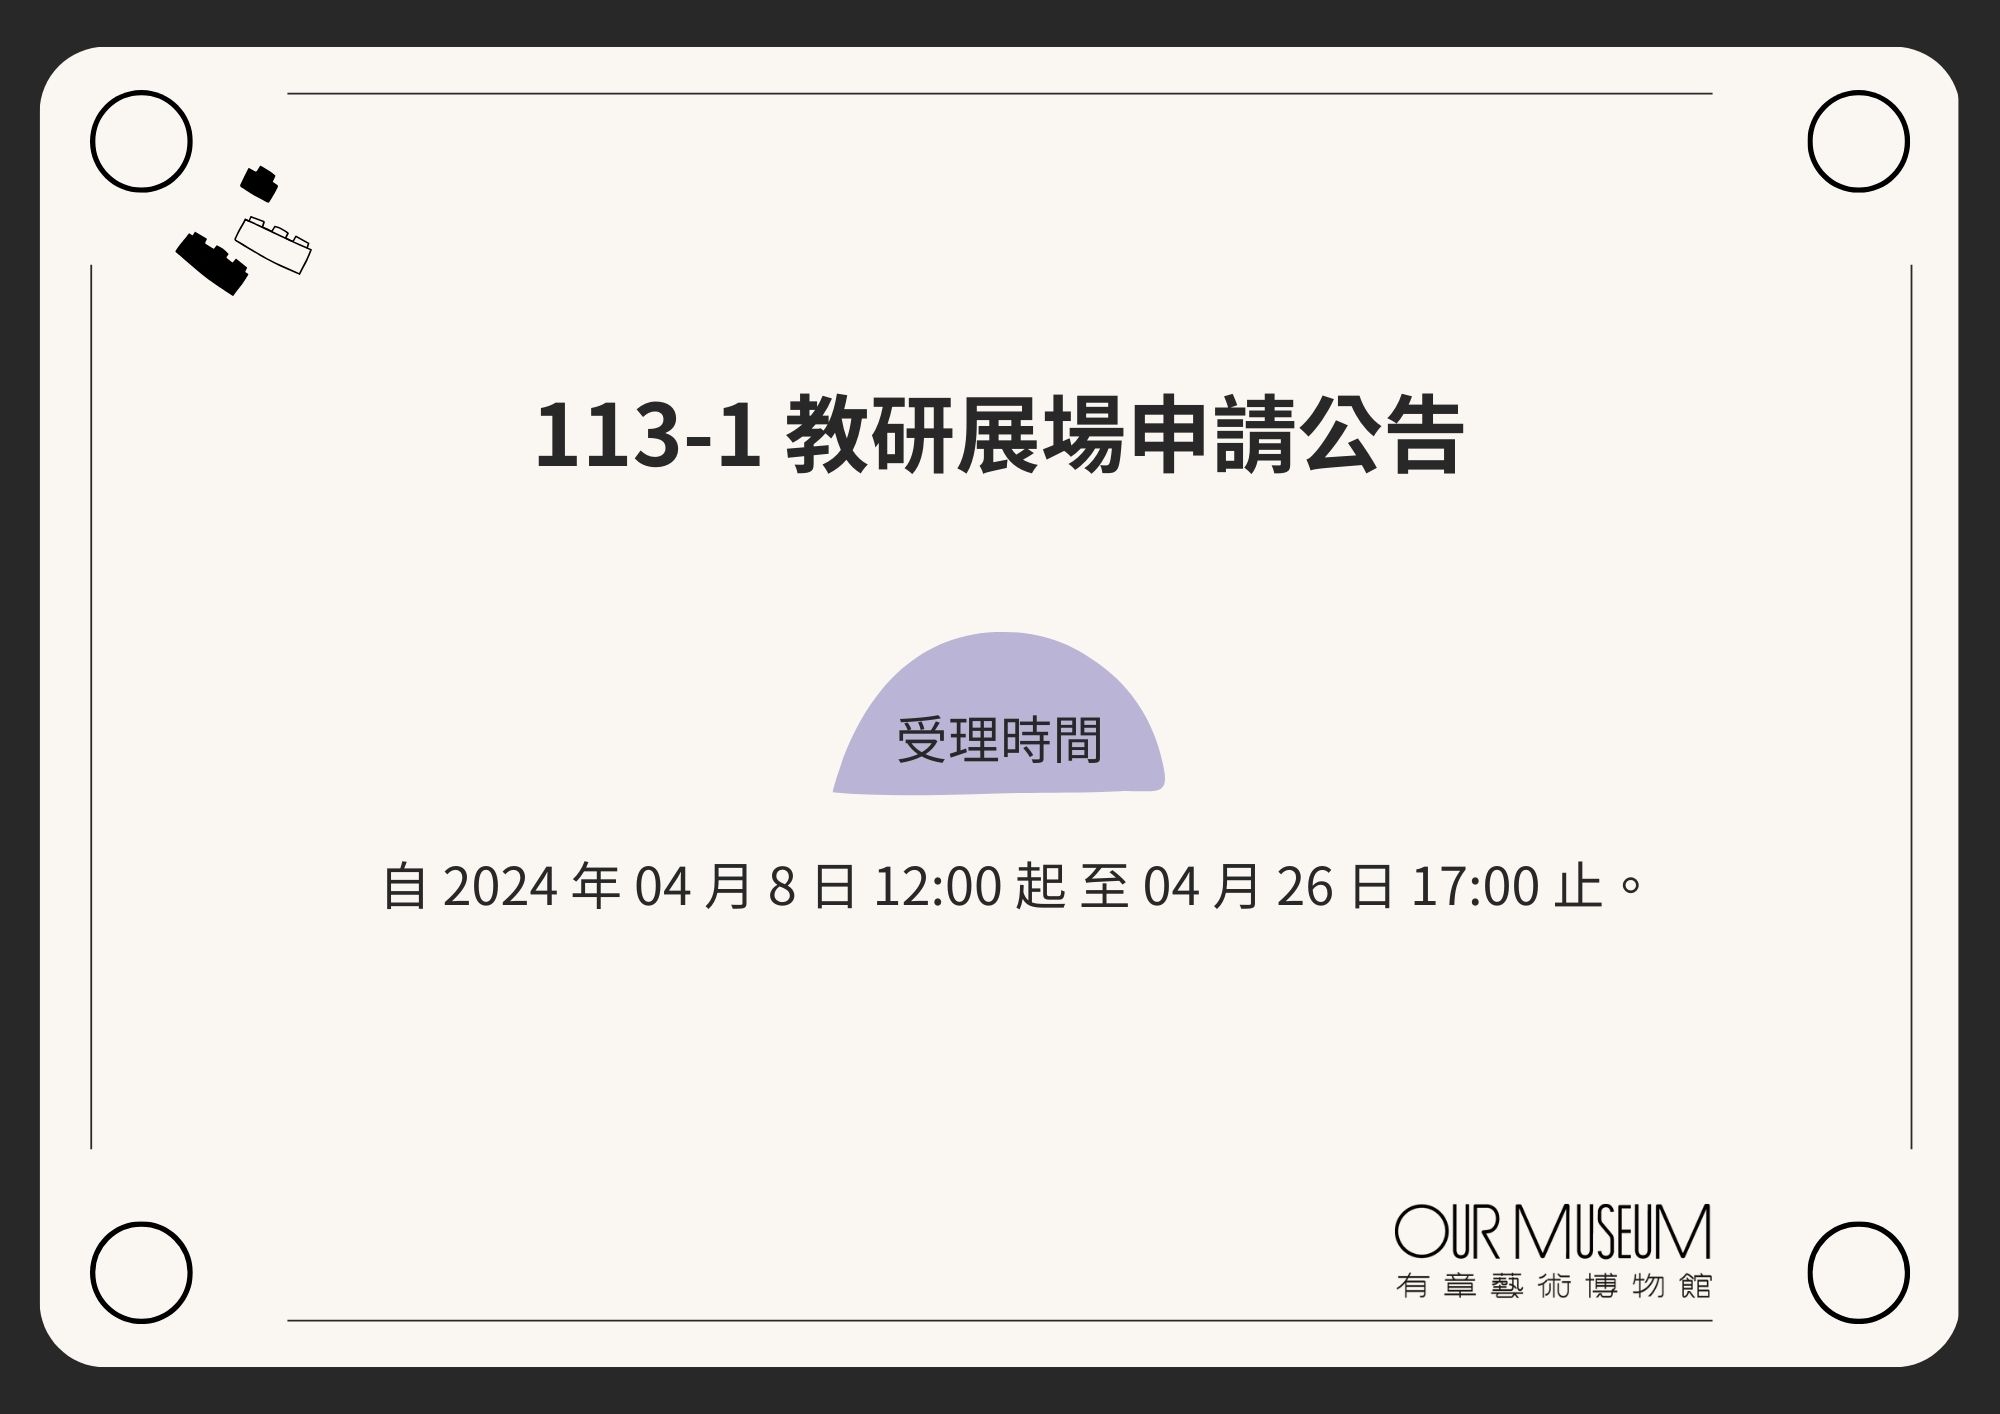 【公告】113-1學期 教學研究大樓展場申請